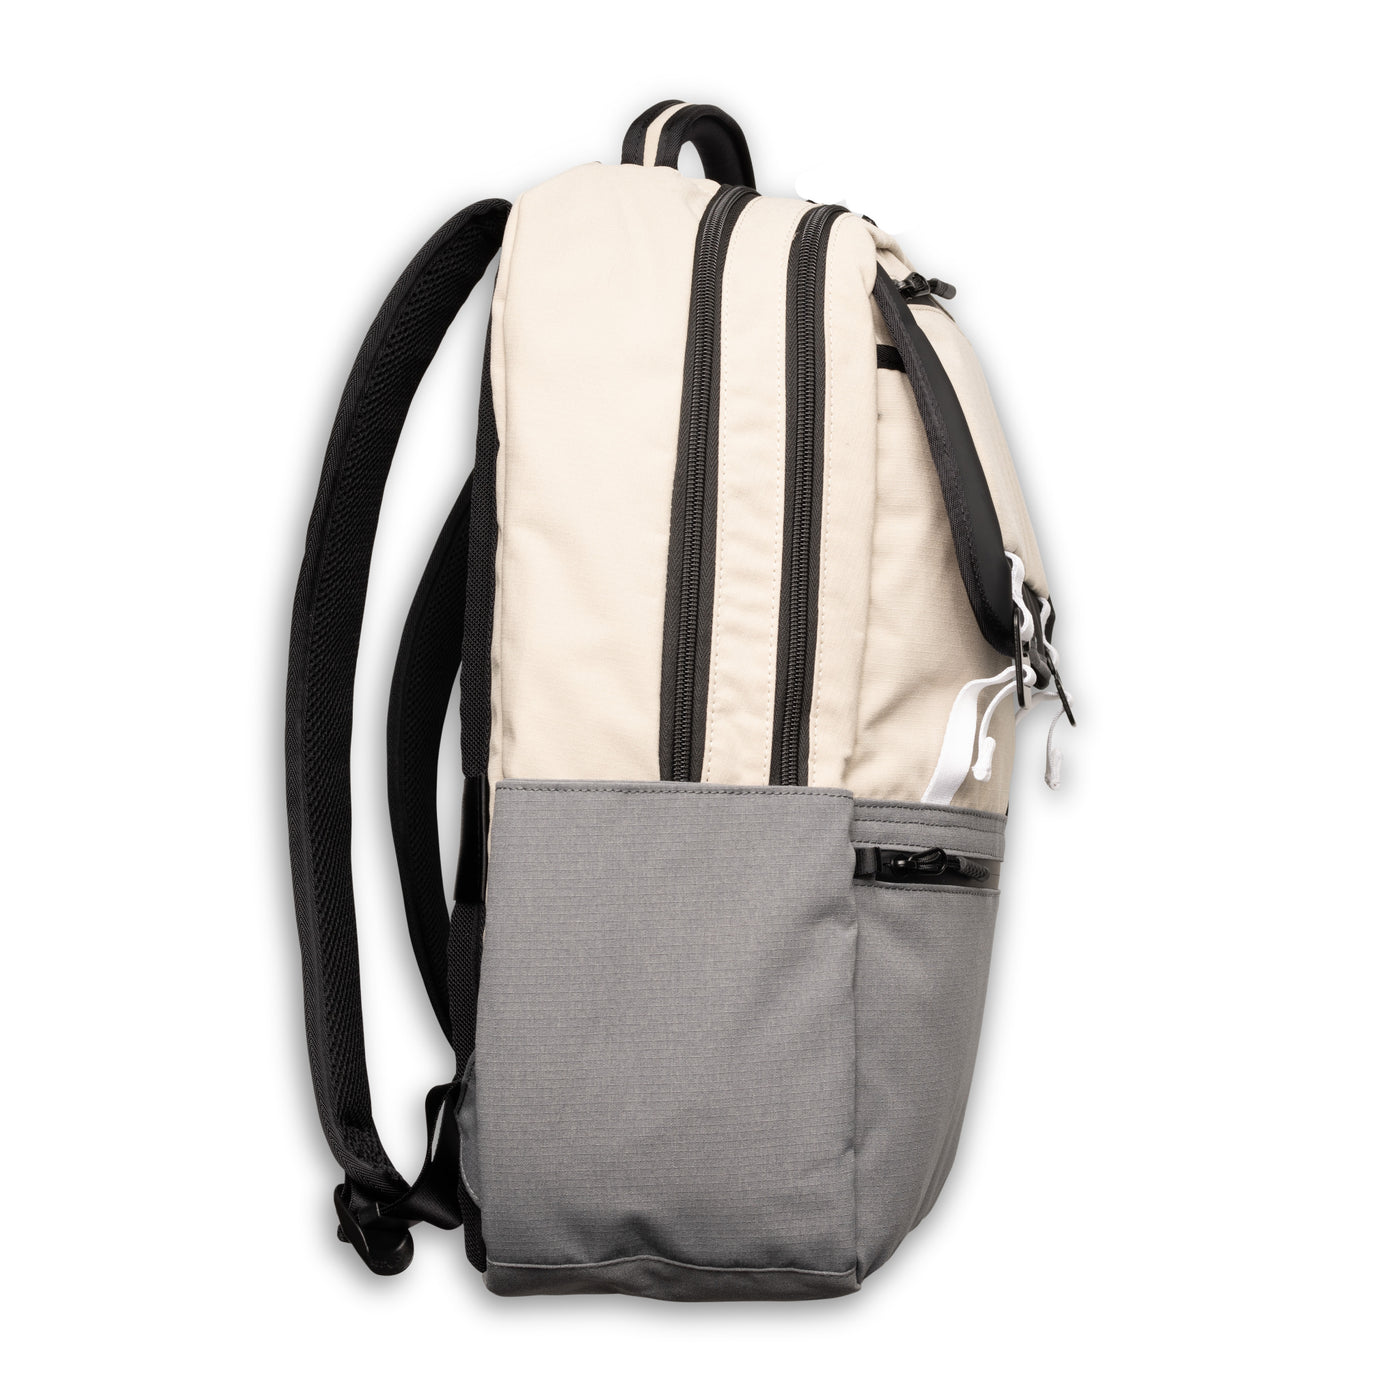 A2 Backpack - Field Khaki/Charcoal